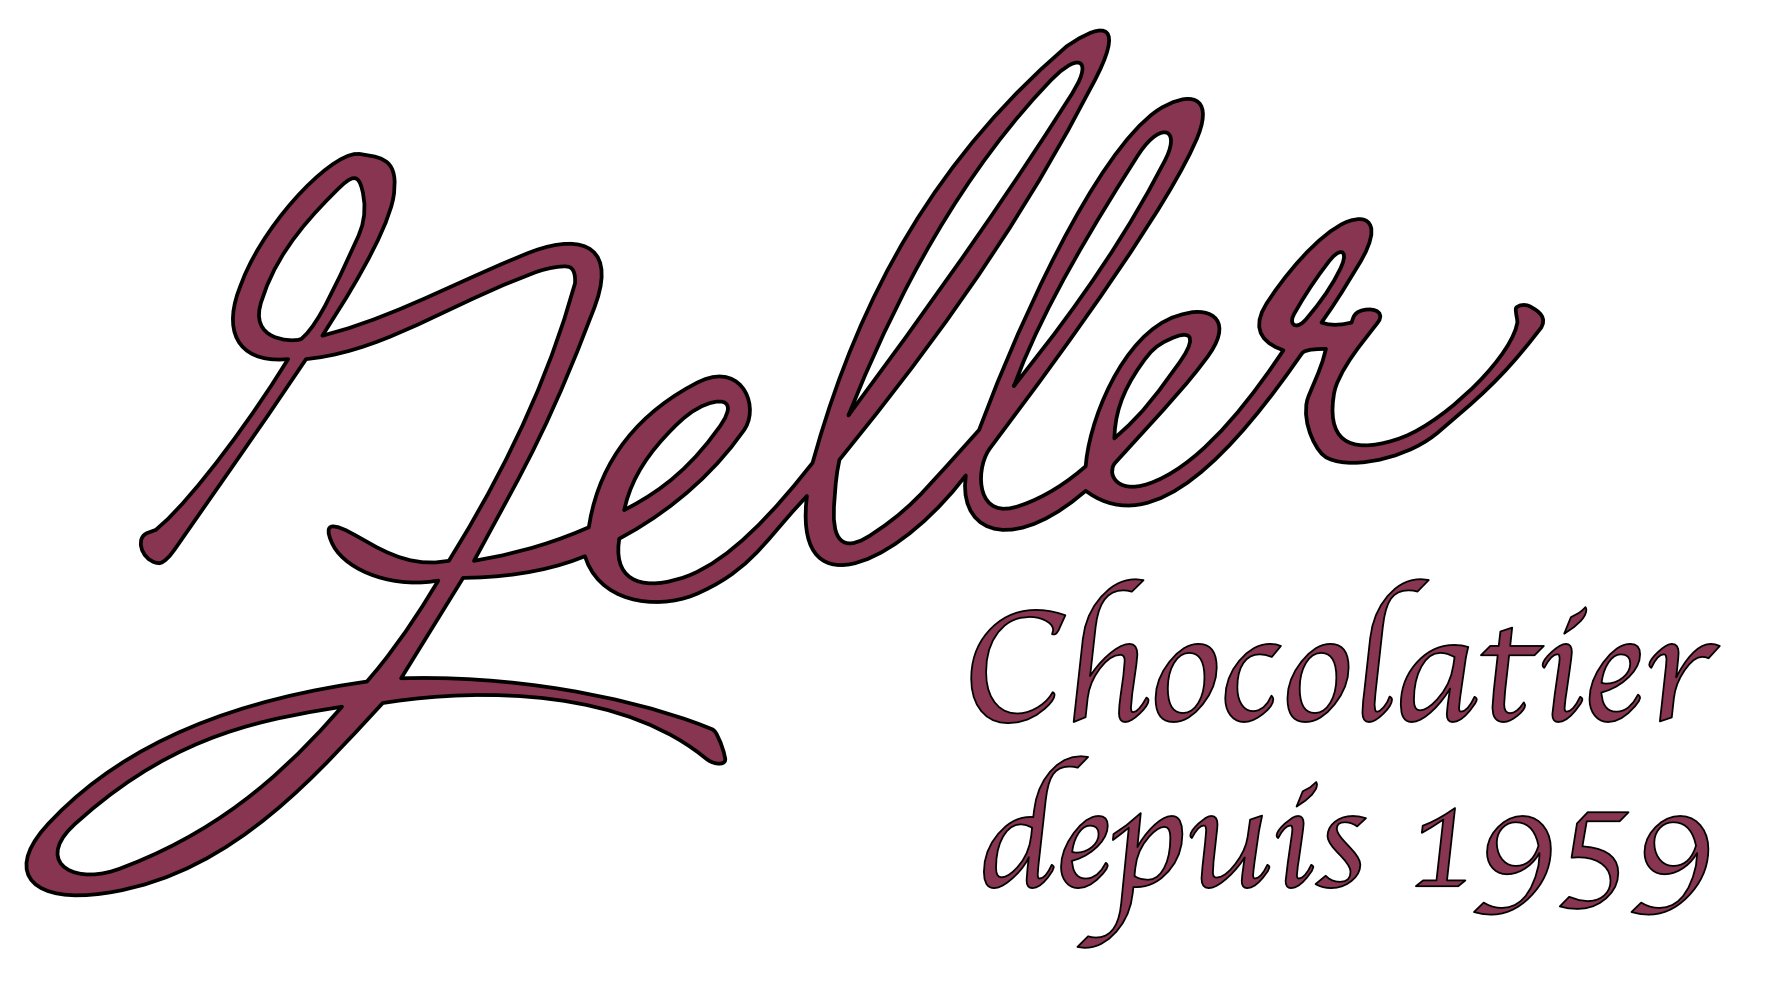 Chocolaterie Zeller